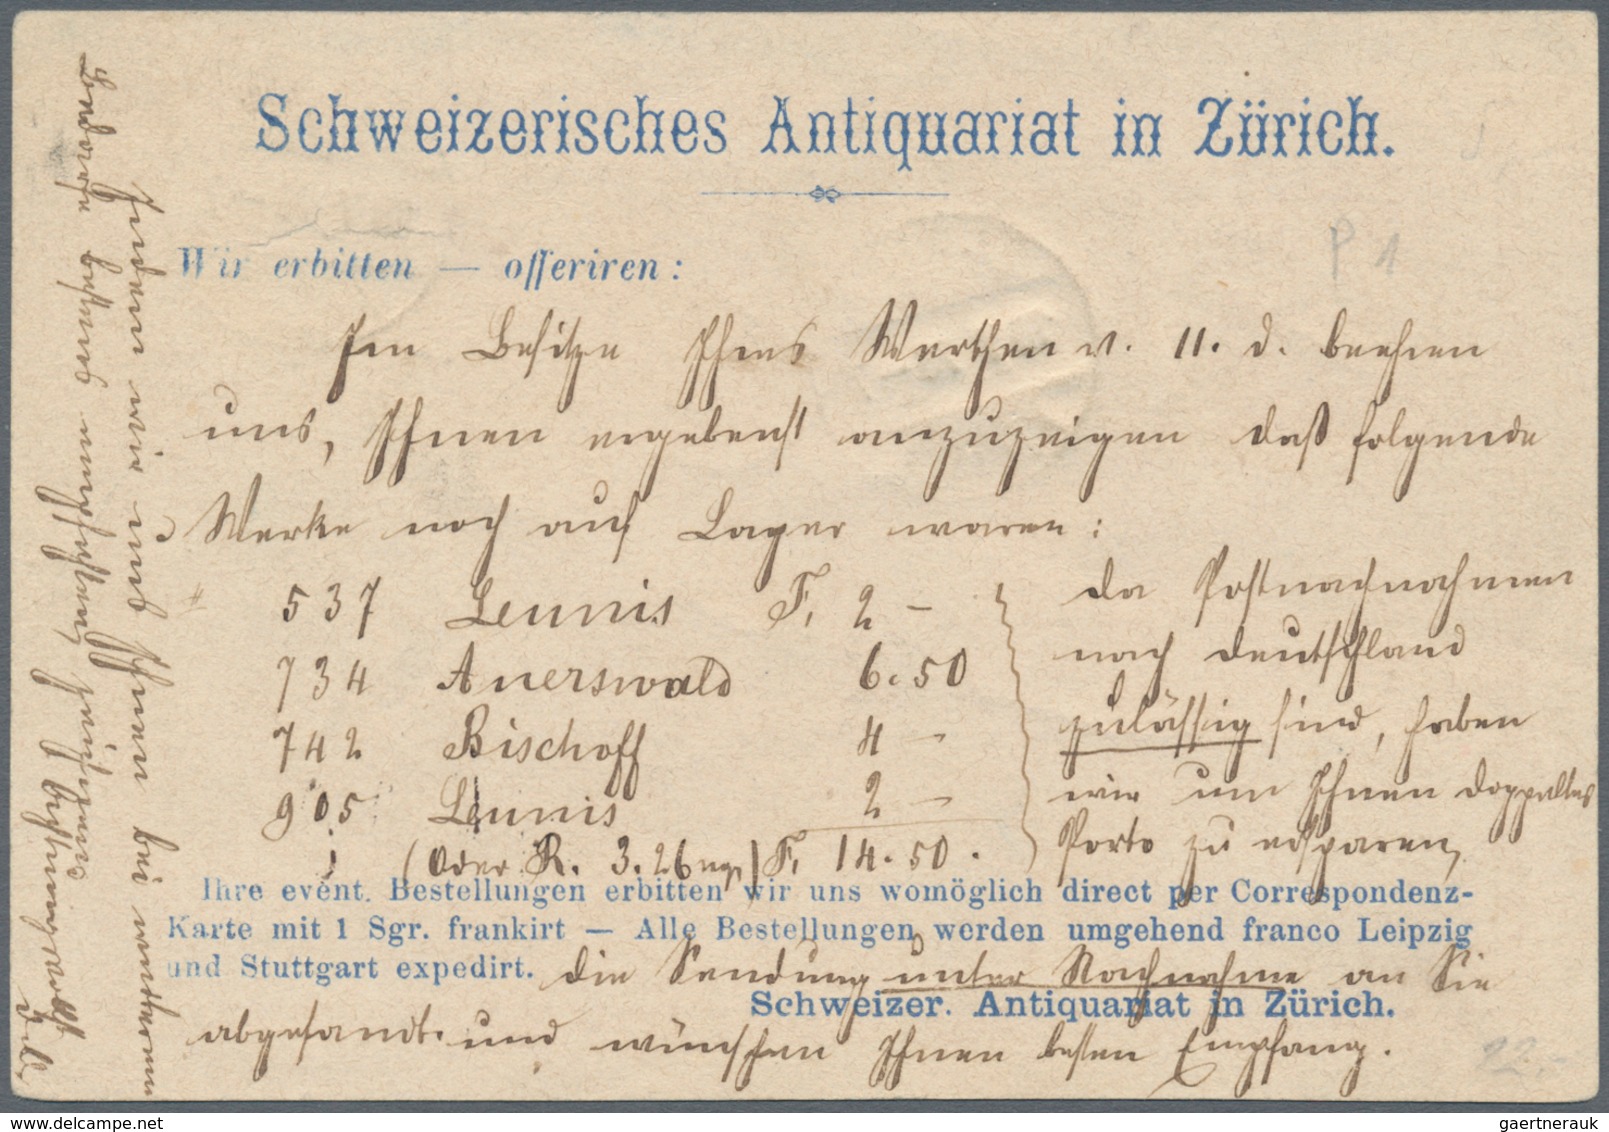 Schweiz - Ganzsachen: 1870 Tübli-Ganzsachenkarte 5 Rp. Mit Rückseitigem Privatzudruck "Schweizerisch - Postwaardestukken